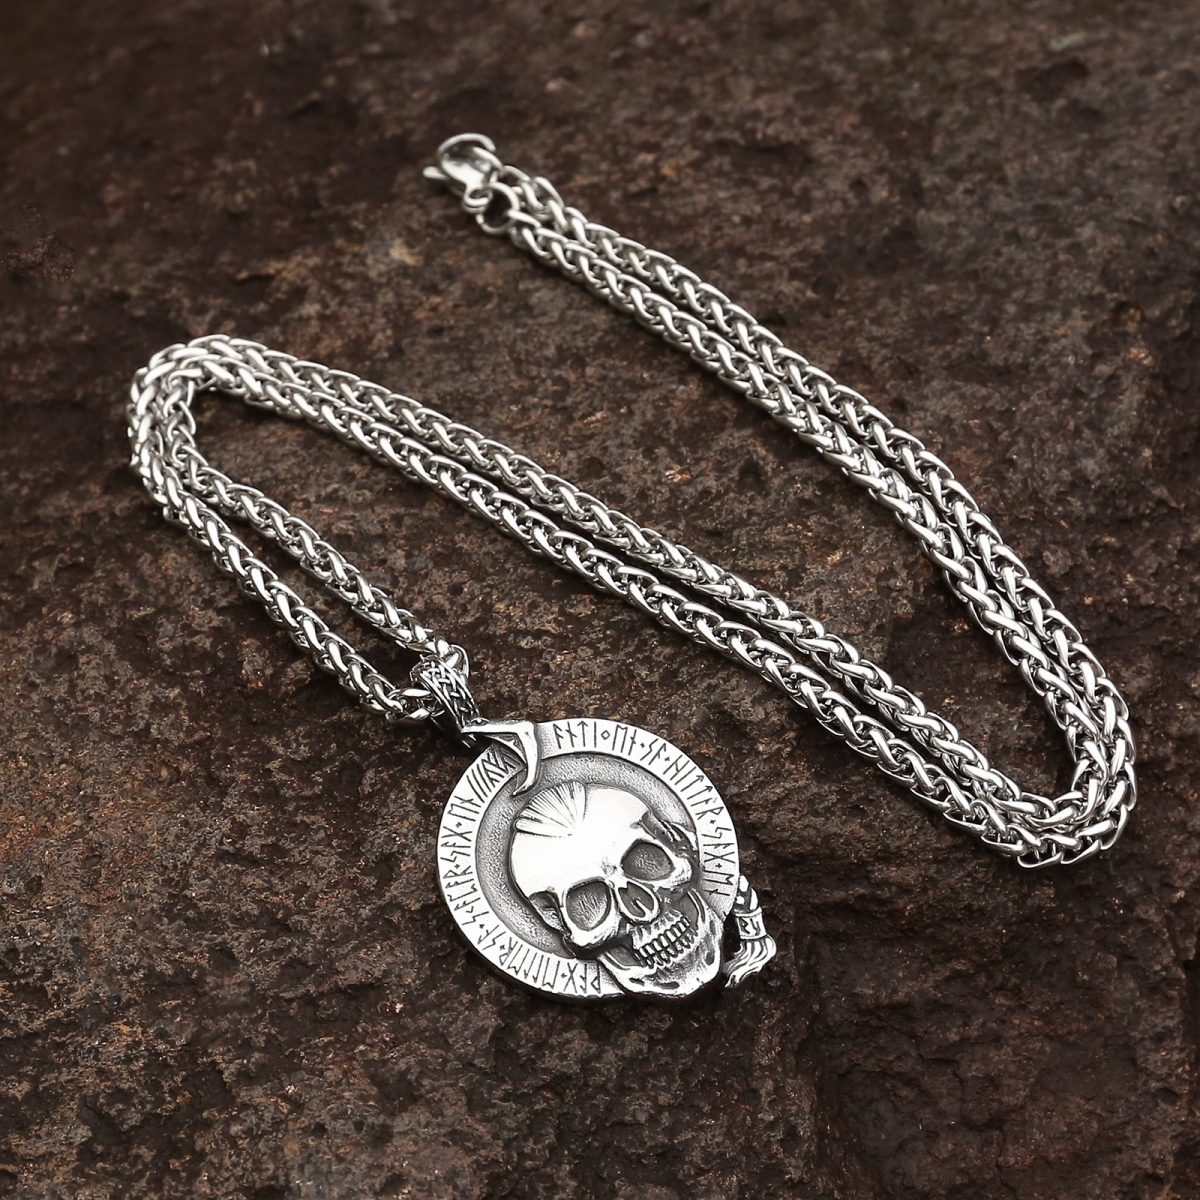 Einherjar US$4.2/PC-NORSECOLLECTION- Viking Jewelry,Viking Necklace,Viking Bracelet,Viking Rings,Viking Mugs,Viking Accessories,Viking Crafts